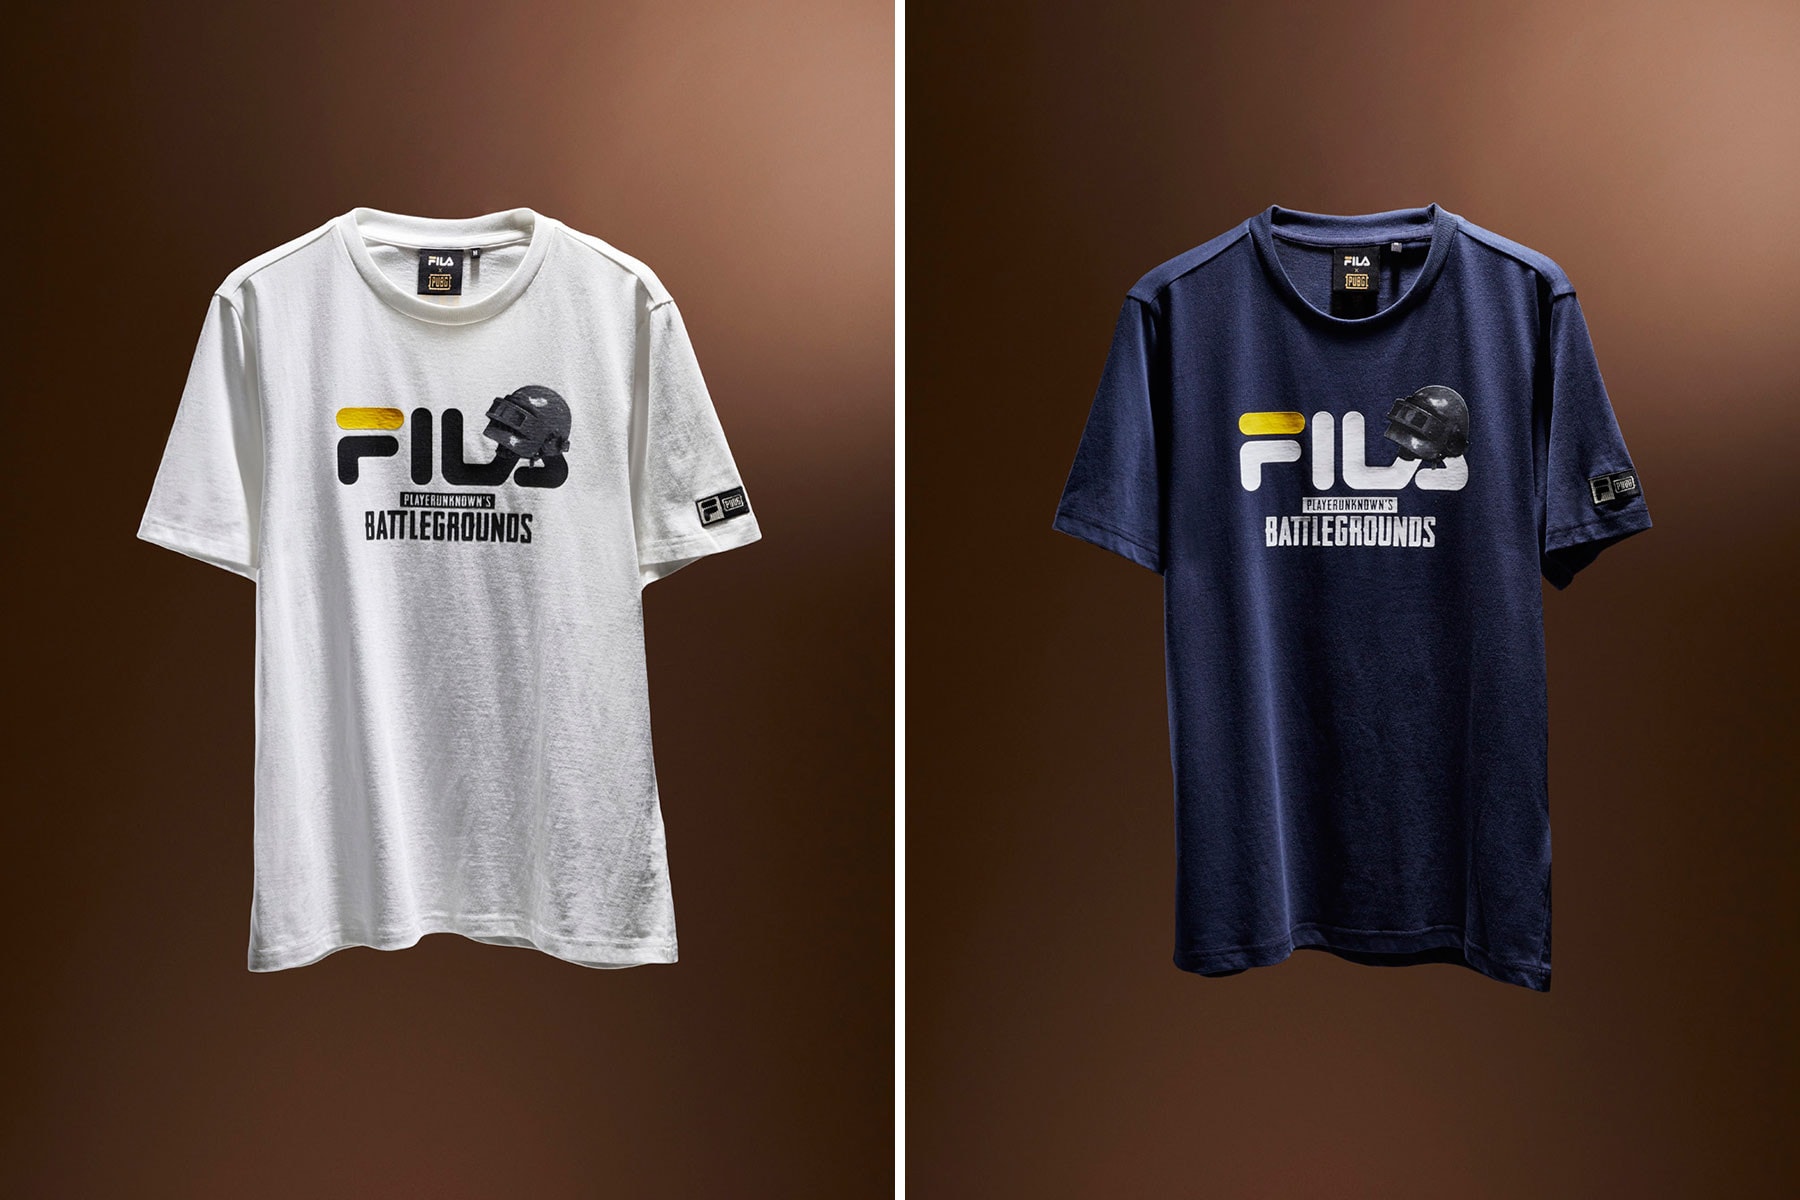 FILA PUBG PlayerUnknown's Battlegrounds Slides Sneakers T-Shirt Backpack Waist Bag